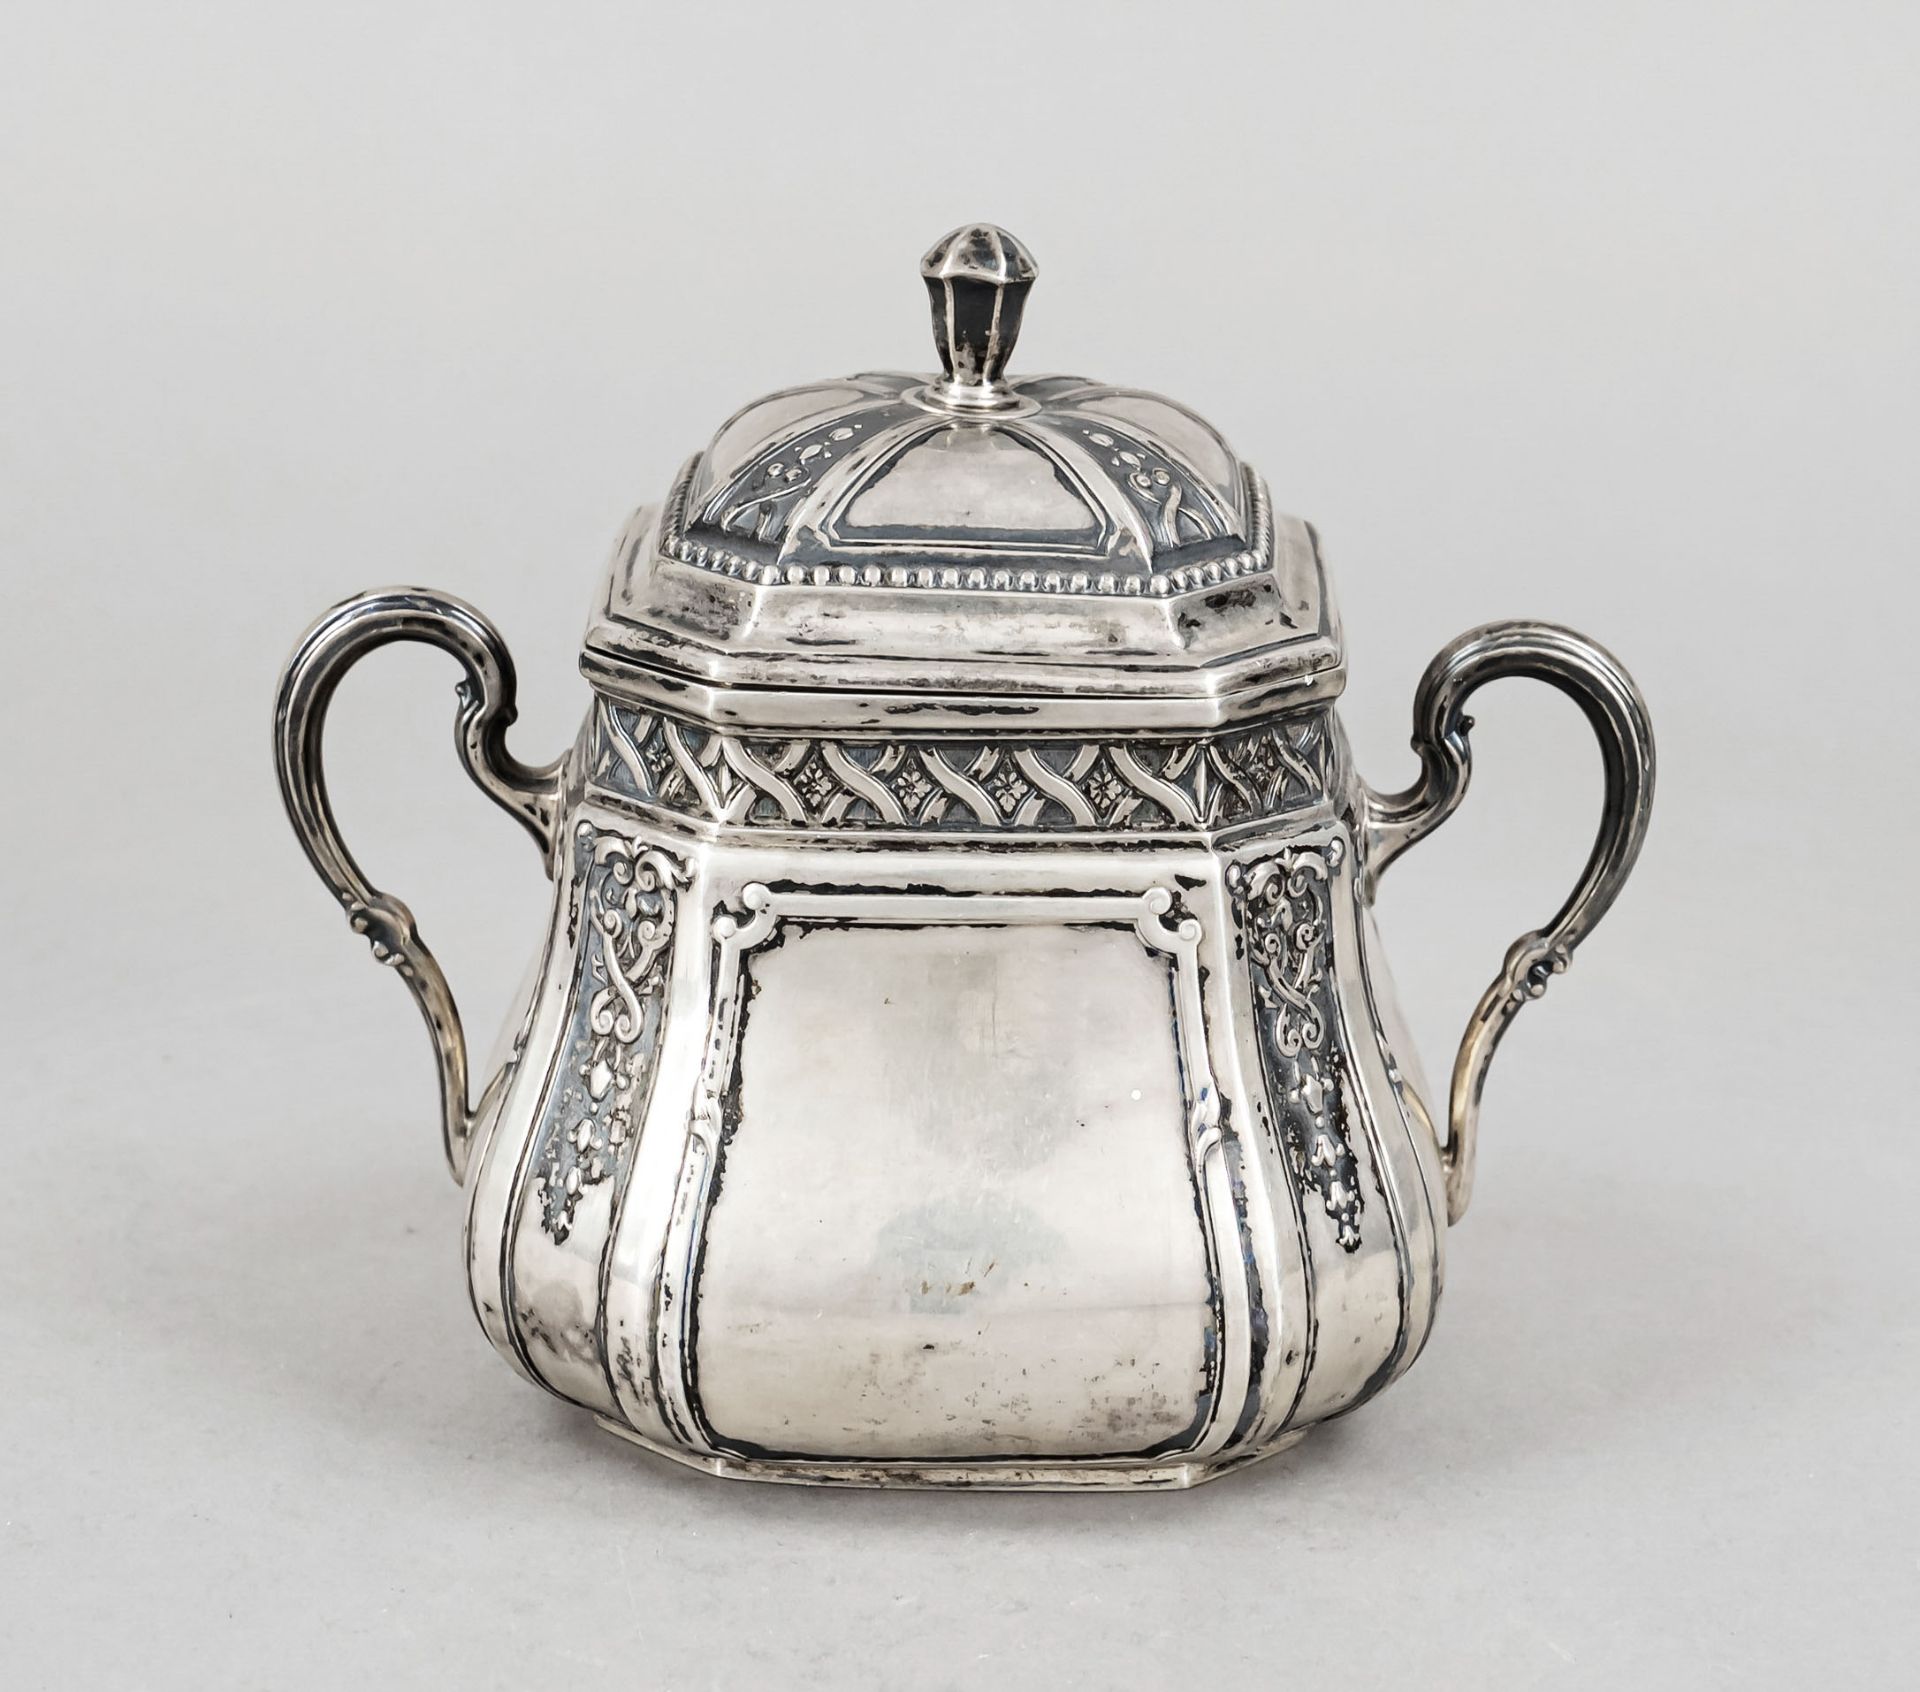 Sugar bowl, German, c. 1900, maker's mark Wilhelm Binder, Schwäbisch Gmünd, silver 800/000, gilt